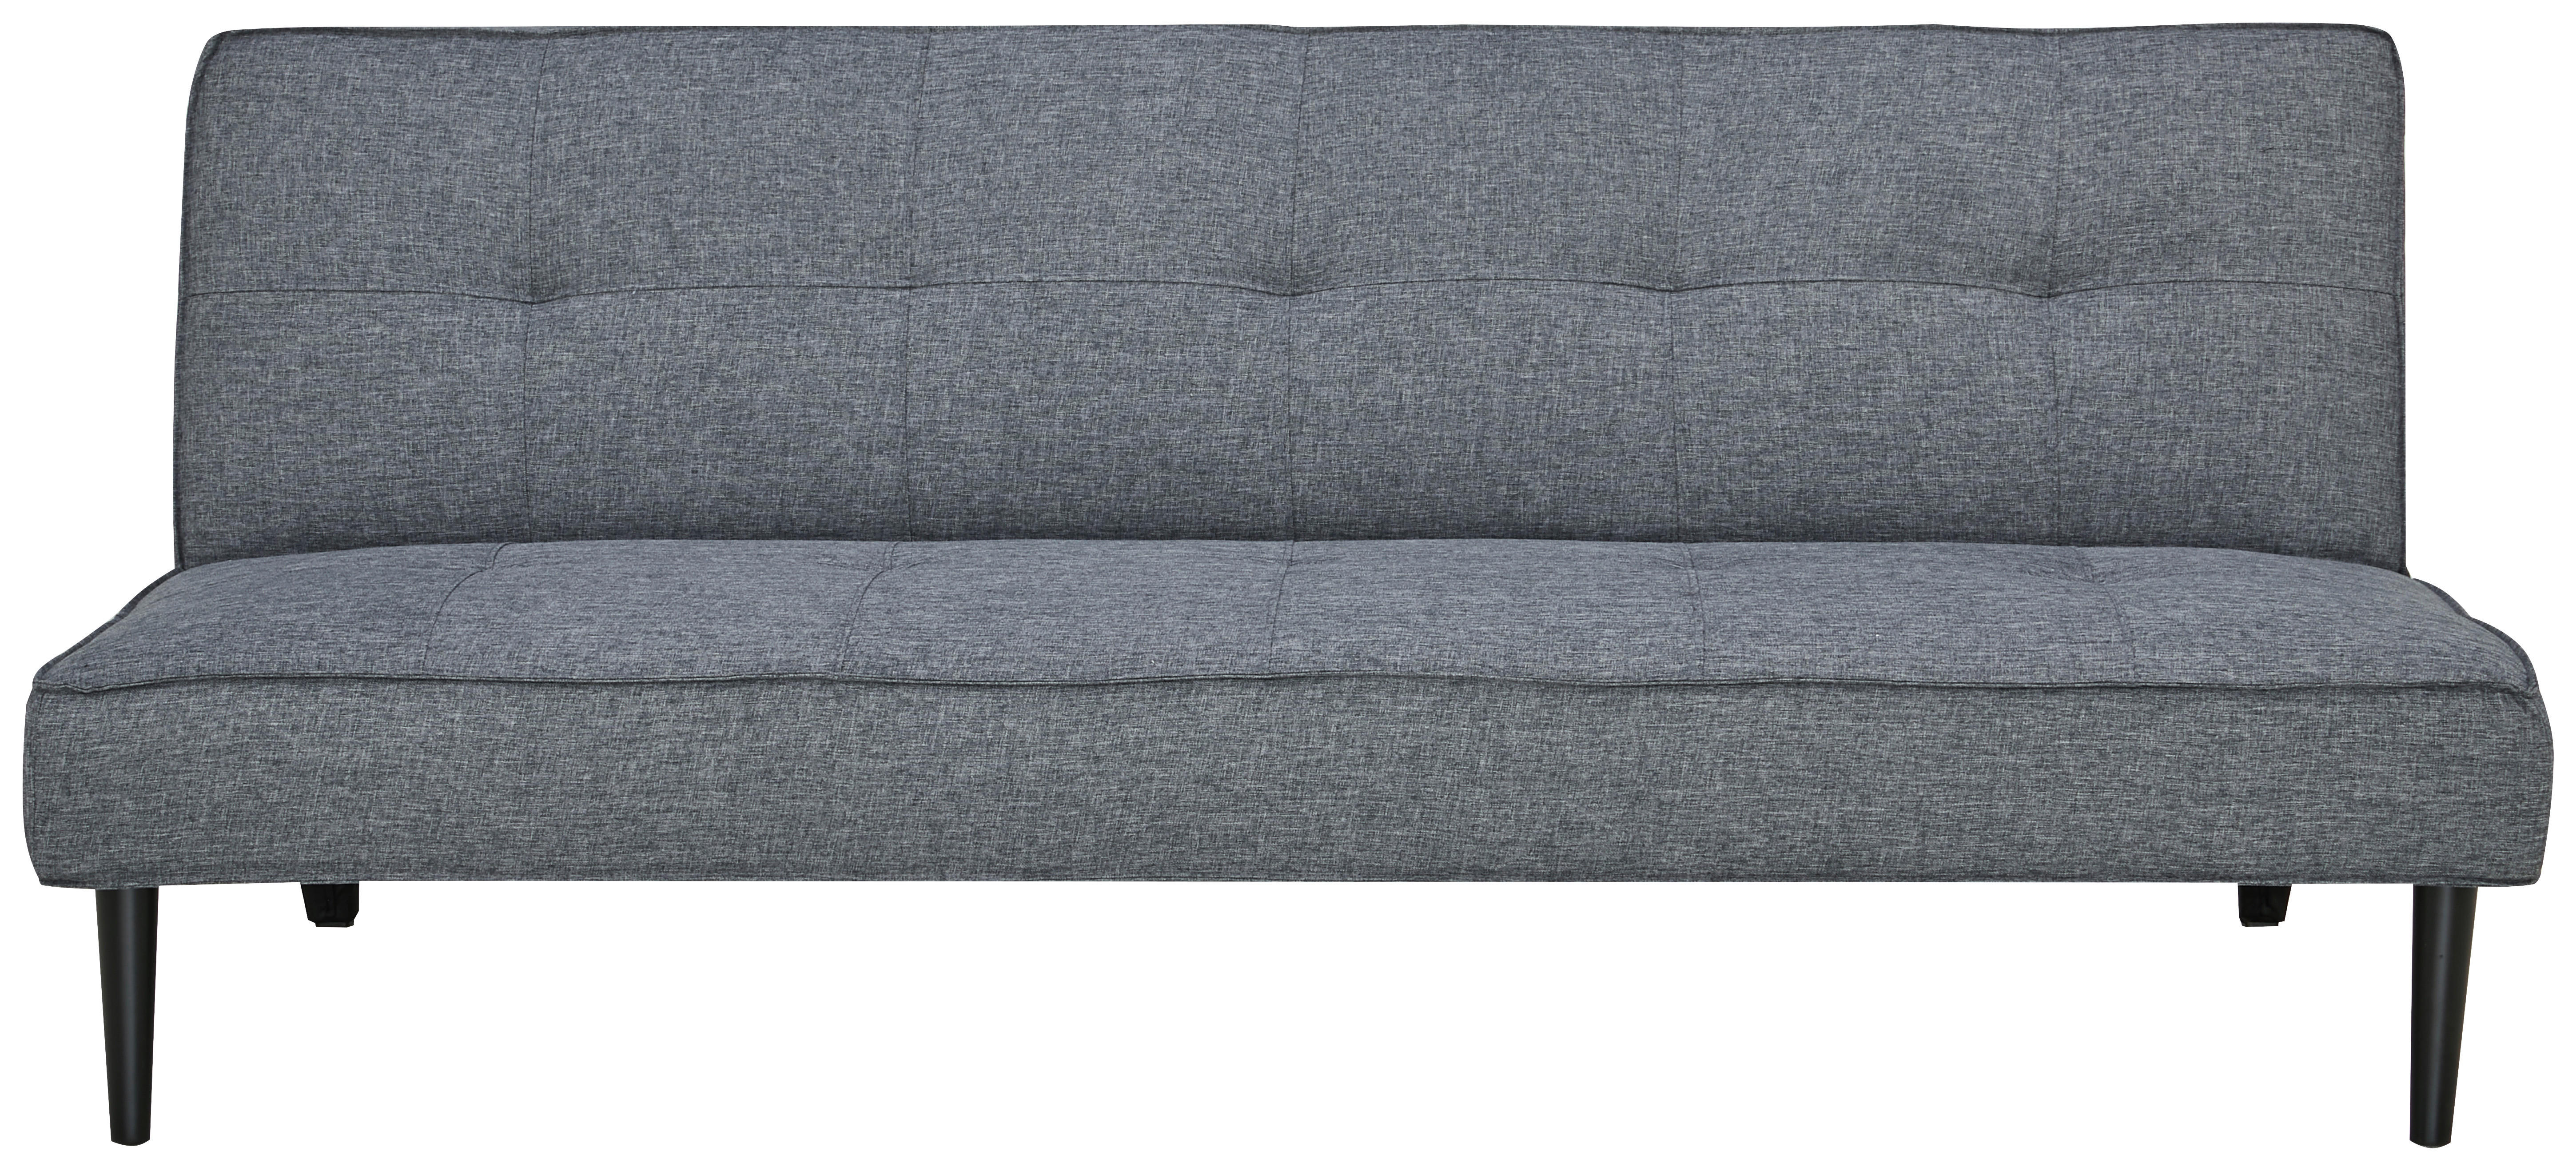 KANAPÉÁGY Textil Sötétszürke  - Sötétszürke/Fekete, Design, Textil (180/77/93cm) - Carryhome